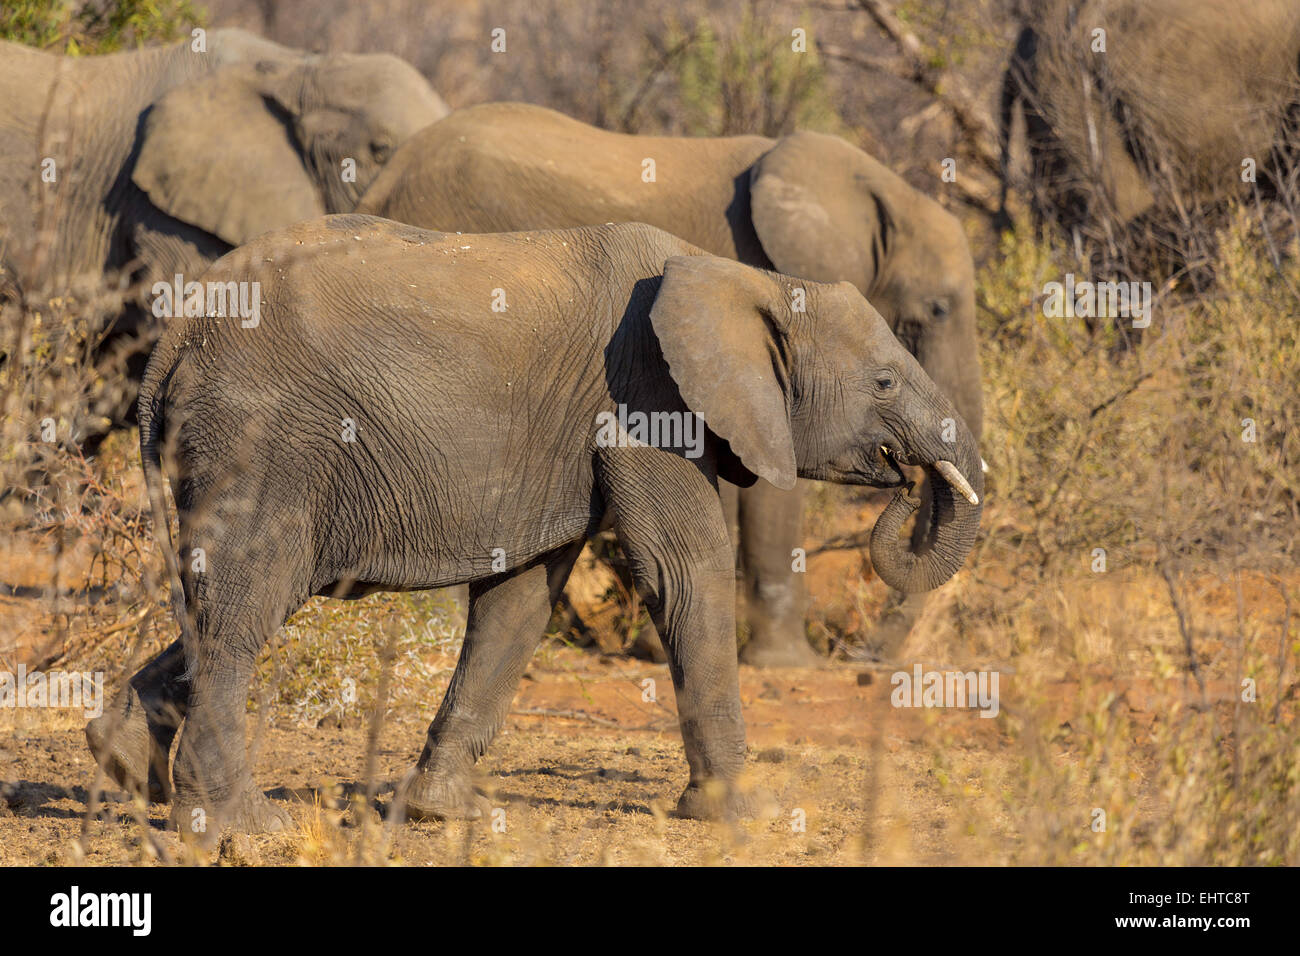 Elephants in the wild Stock Photo